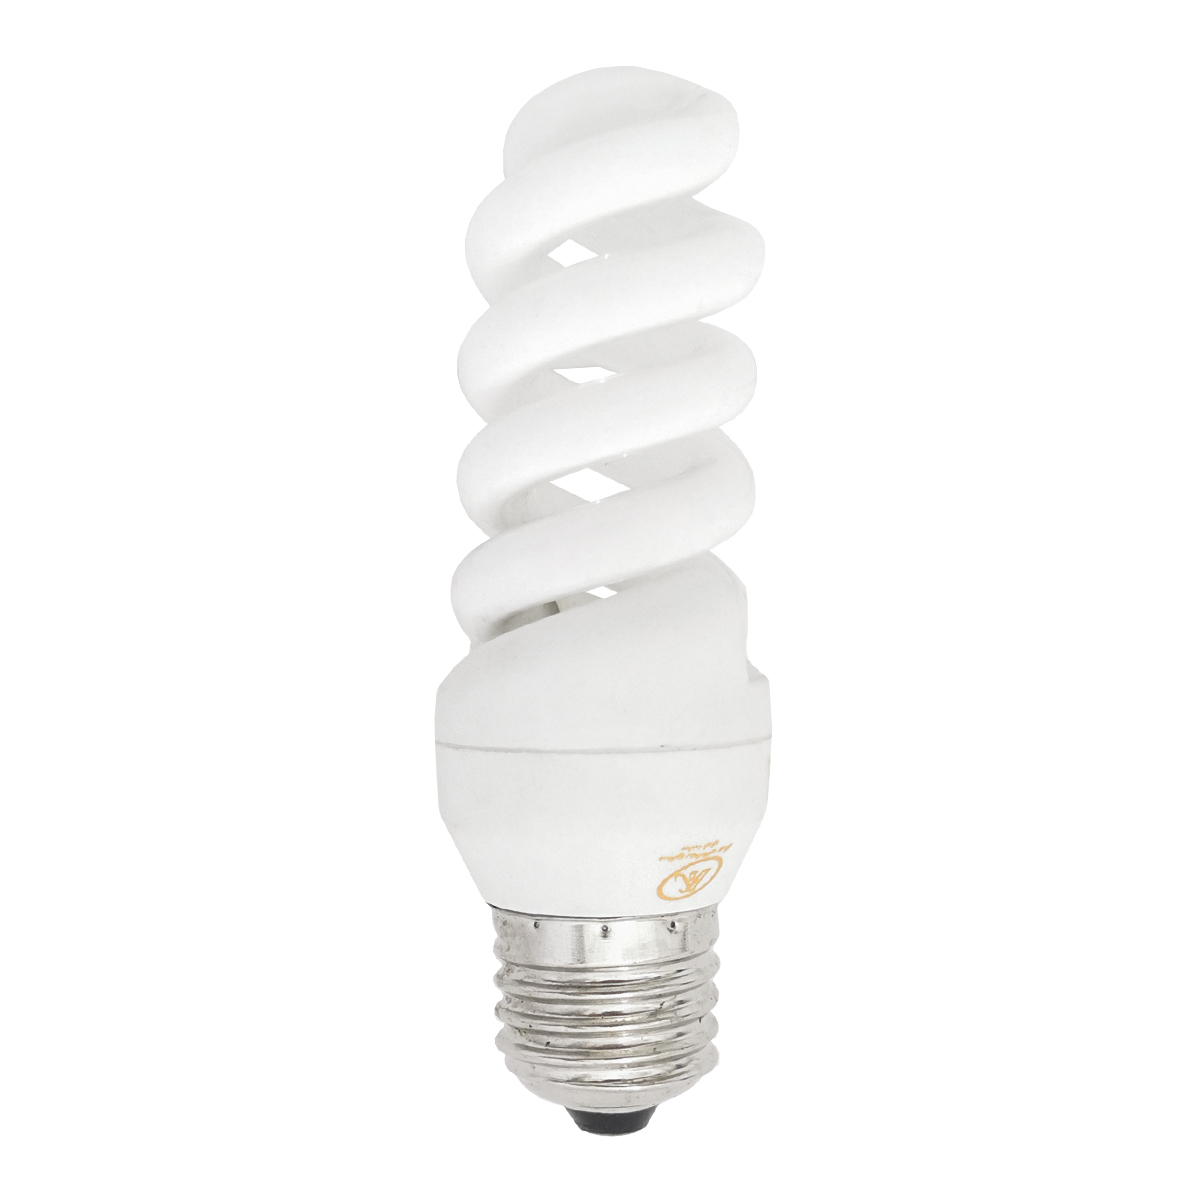 لامپ کم مصرف 15 وات بیکو مدل B75 پایه E27